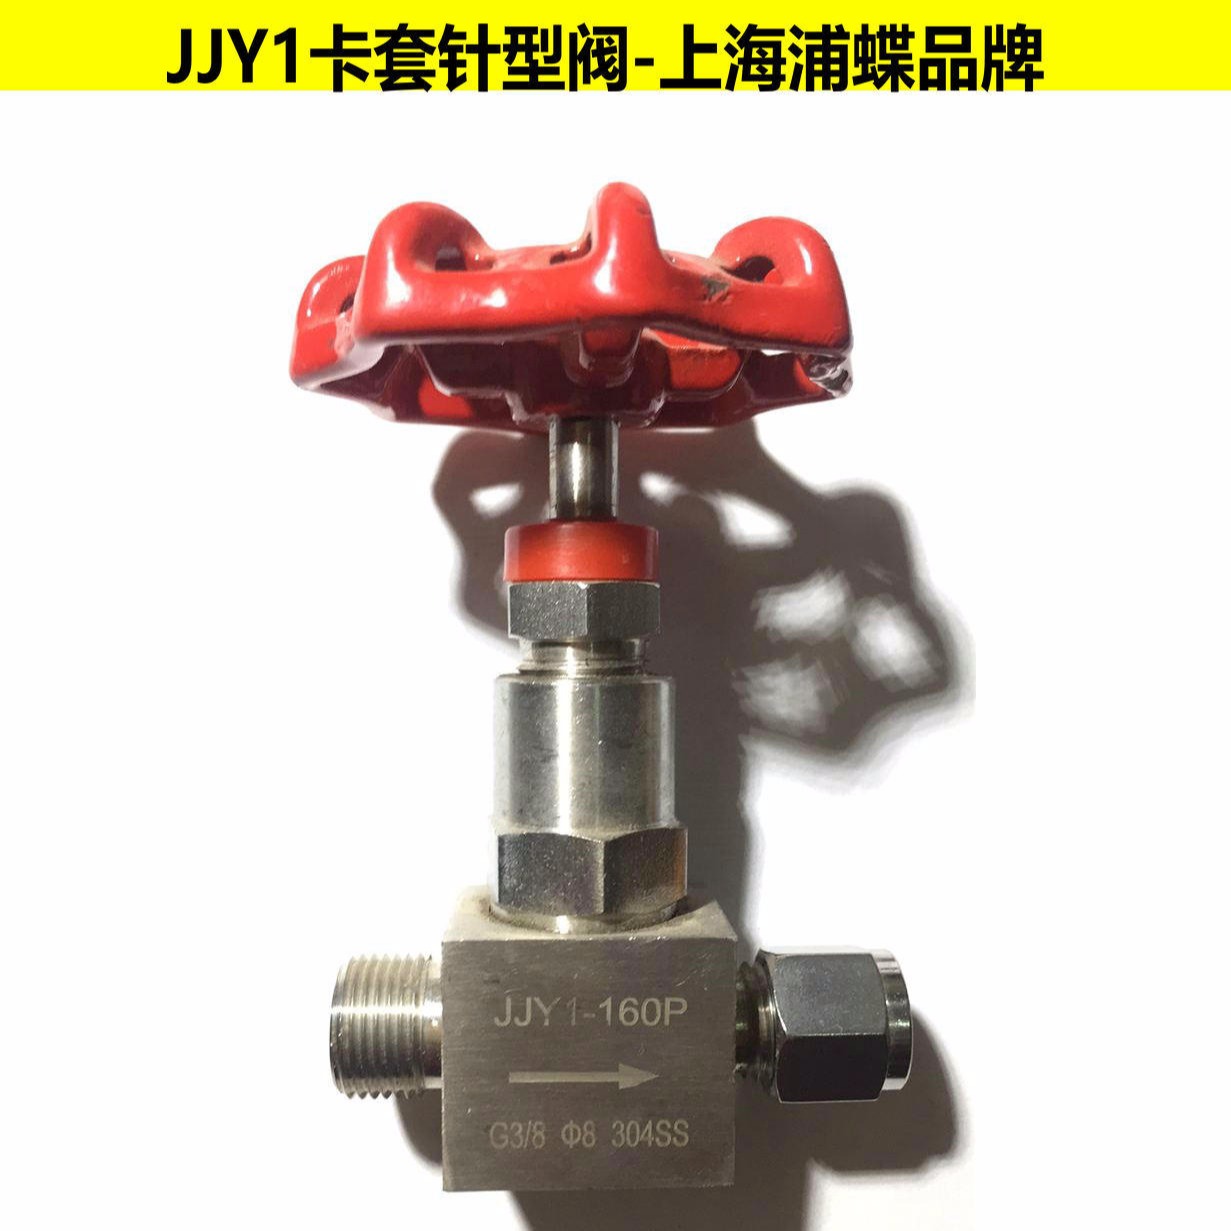 卡套针型阀JJY1 上海浦蝶品牌